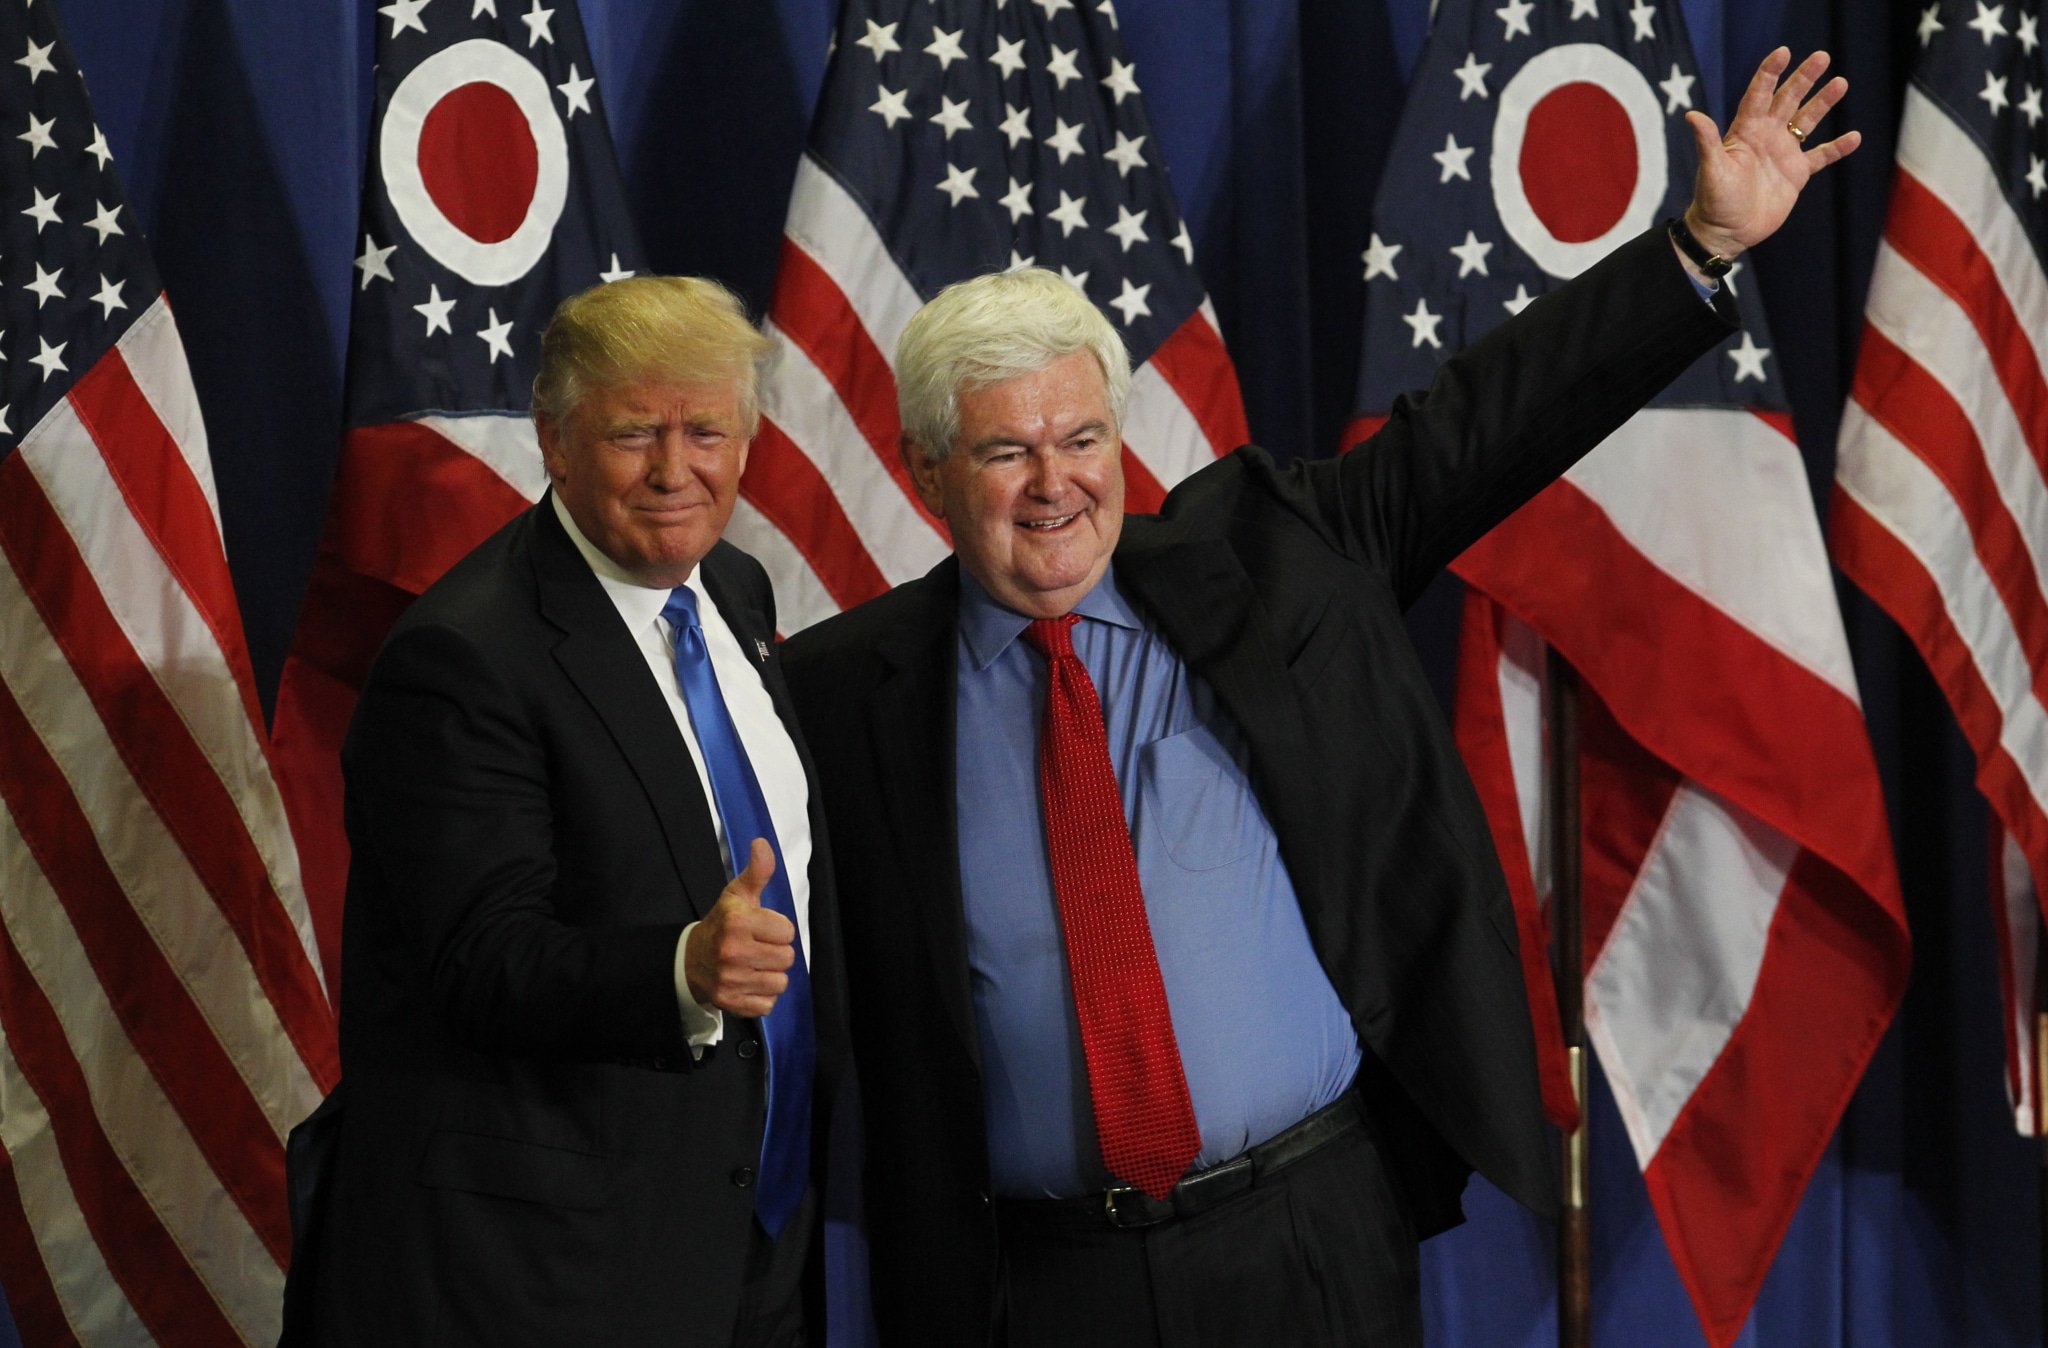 Cựu Chủ tịch Hạ viện Newt Gingrich (bên phải) chụp ảnh cùng ứng viên Tổng thống Donald Trump tại một cuộc vận động chiến dịch ở Cincinnati, Ohio vào ngày 6 tháng 7 năm 2016. (Nguồn ảnh: John Sommers II/Getty Images)